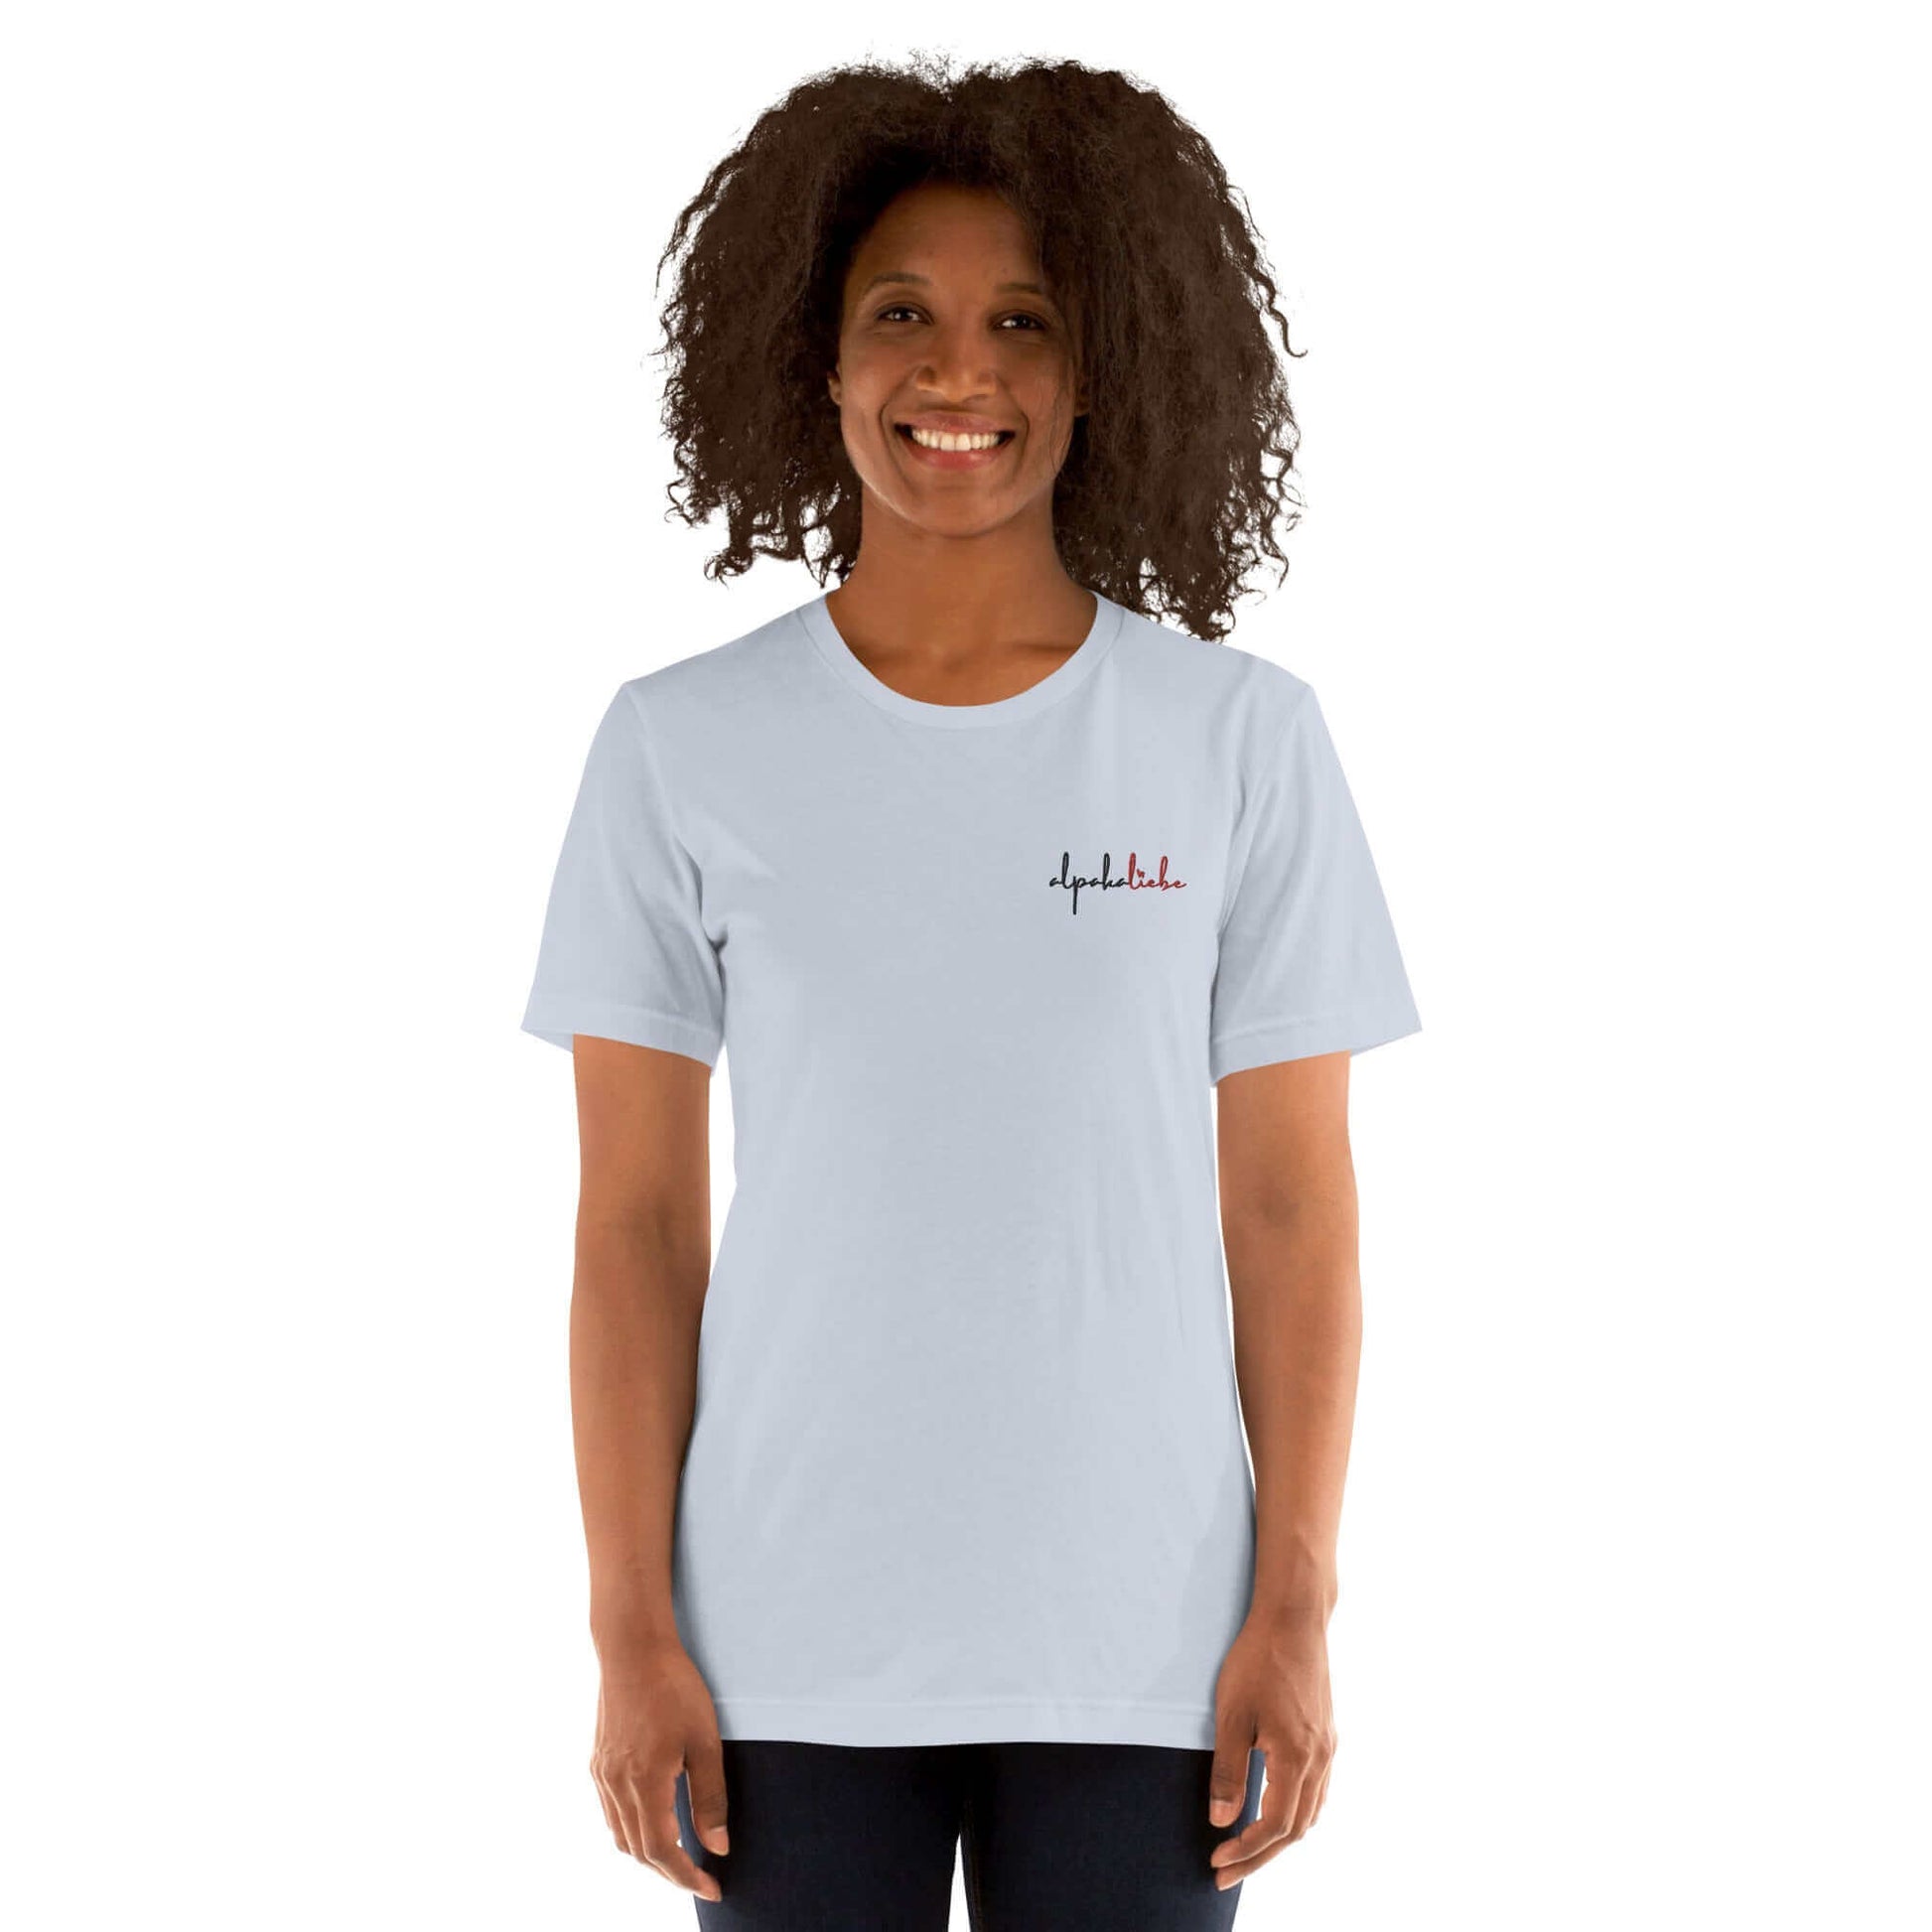 Alpaka Online Shop Highlight: 'alpakaliebe' T-Shirt in verschiedenen Farben.